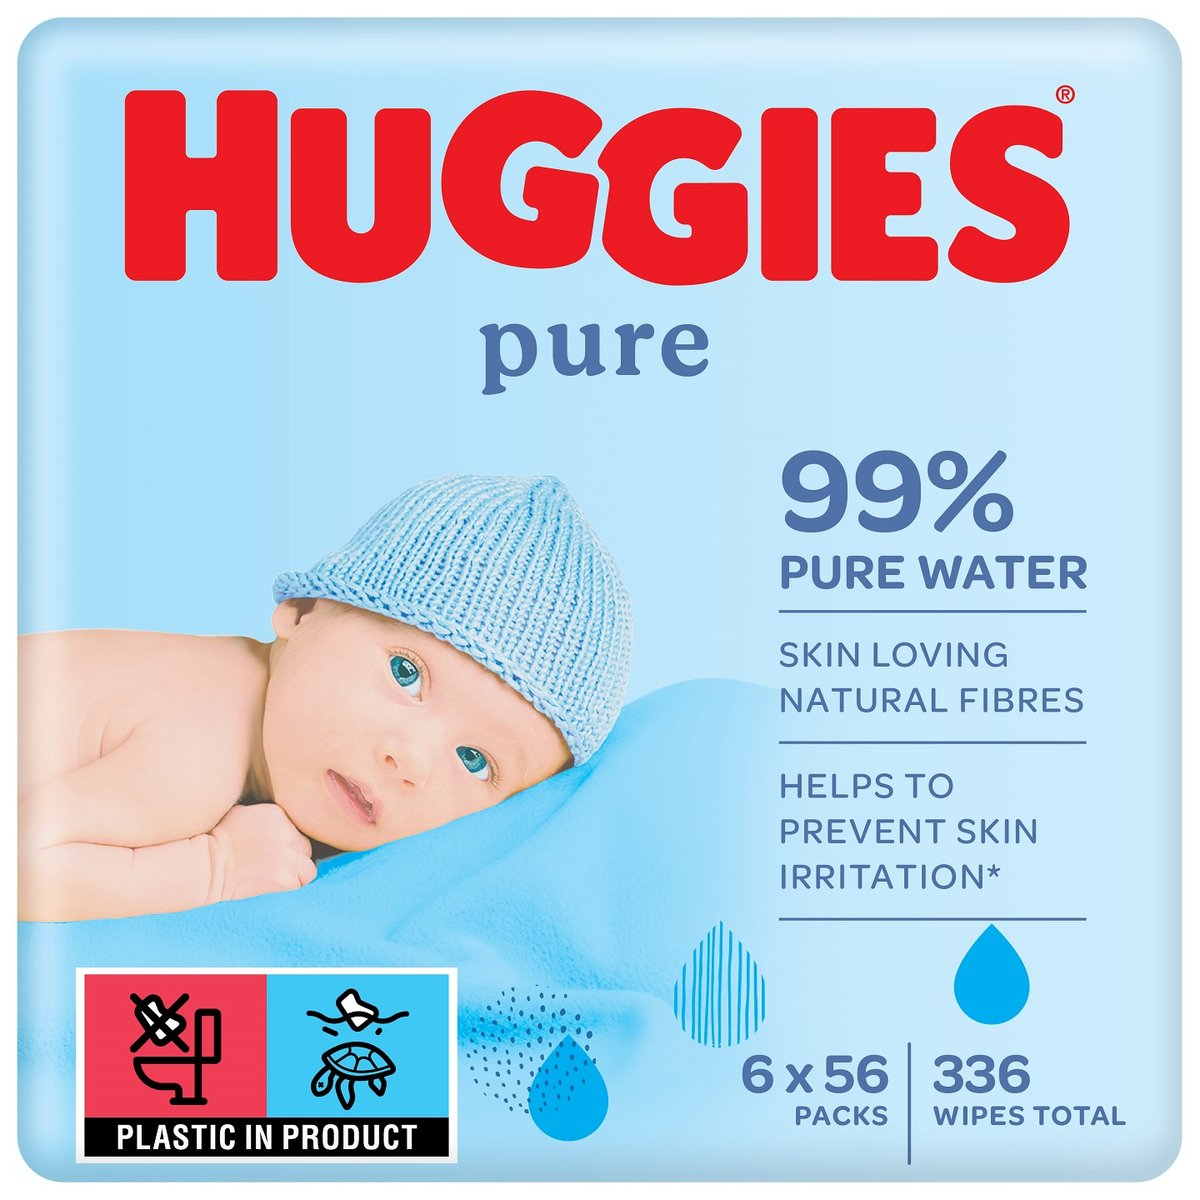 pieluszki dla dzieci huggies produkowane produkowane 1999 roku